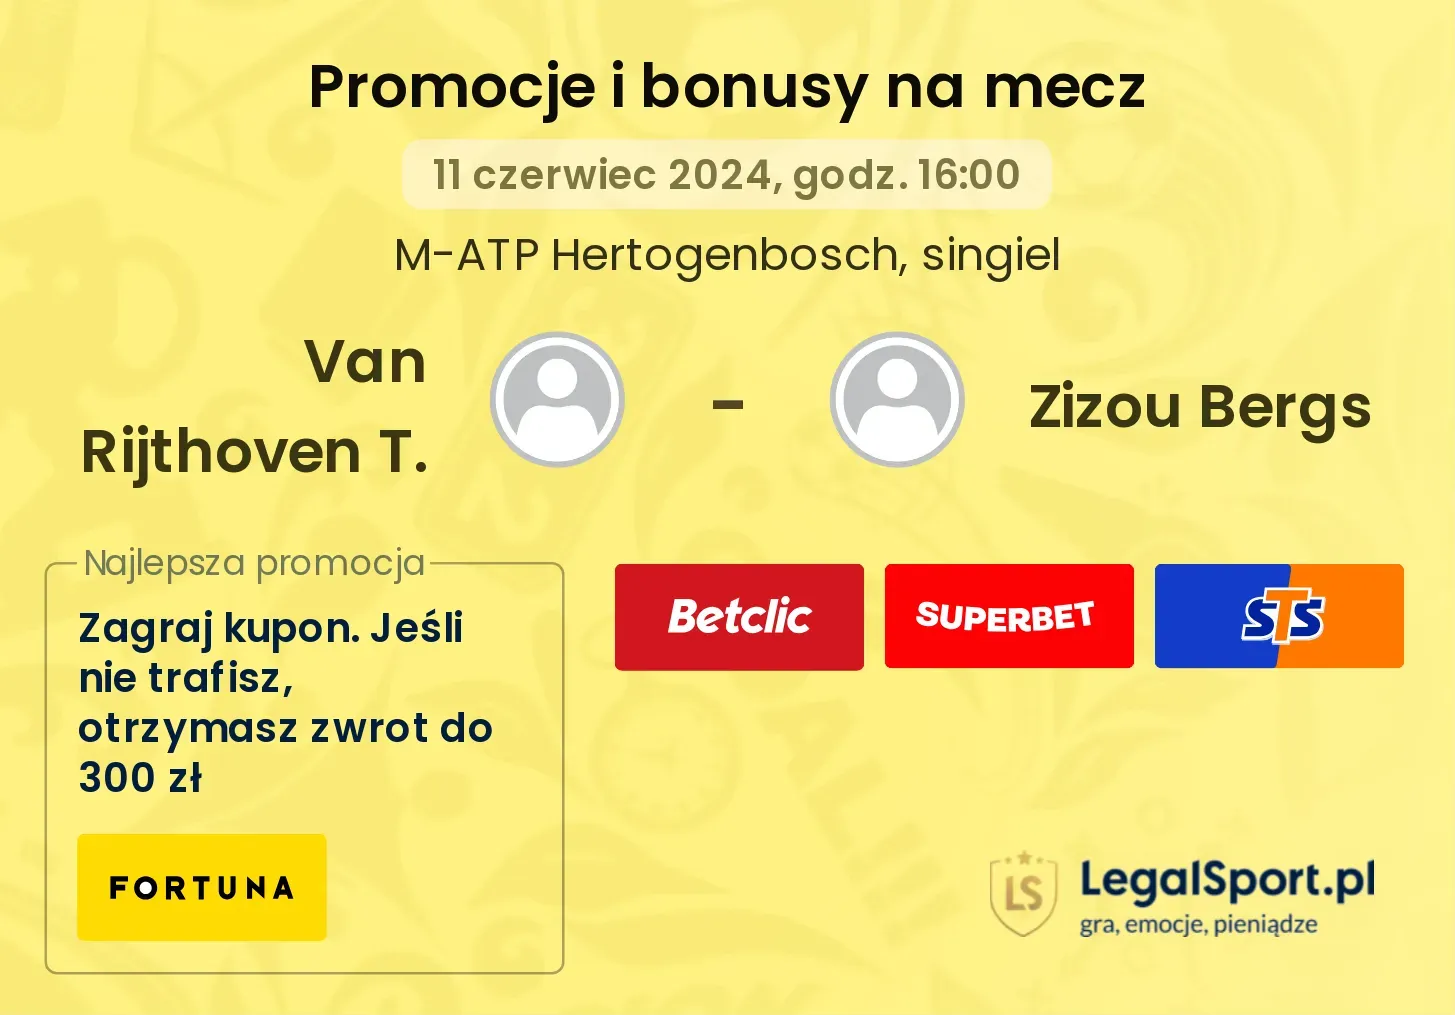 Van Rijthoven T. - Zizou Bergs promocje bonusy na mecz